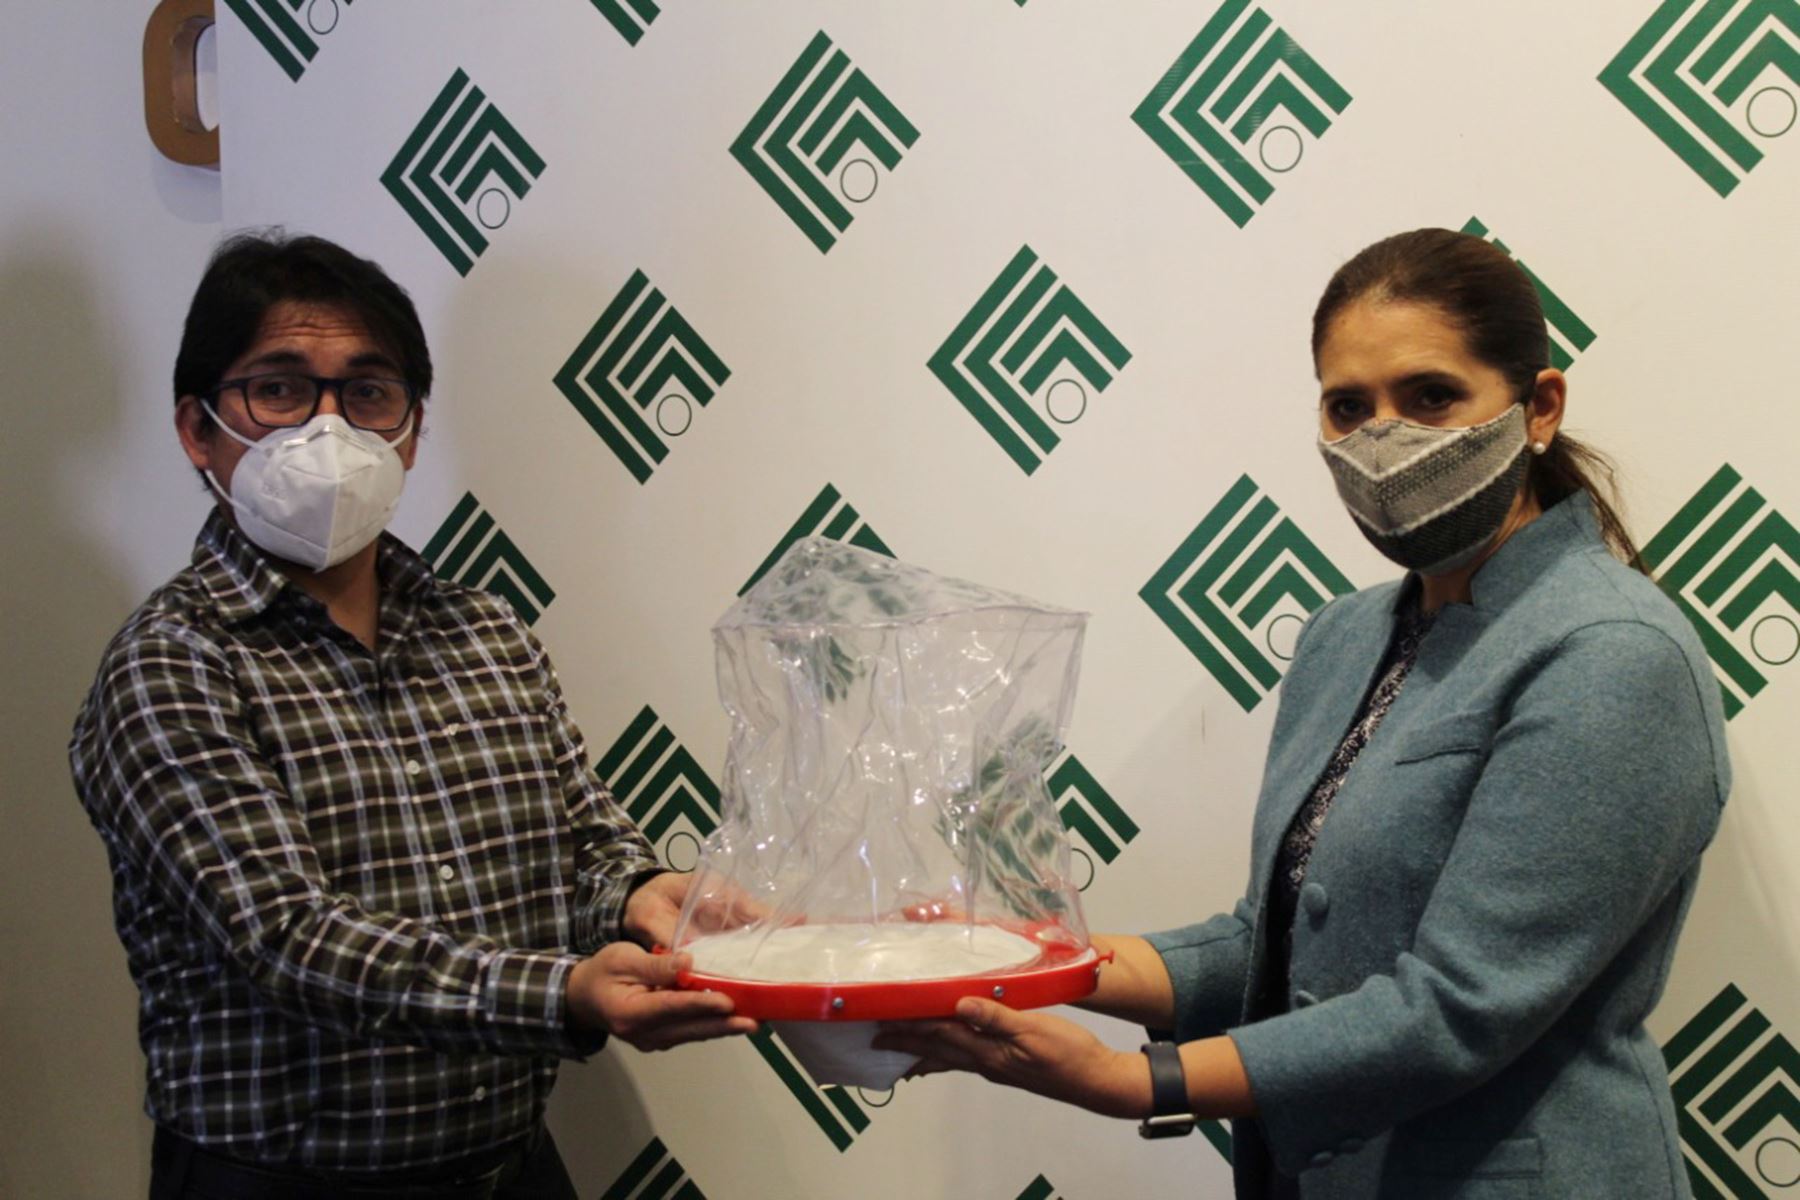 La CCIA donó 50 cascos de ventilación, de un total de 95, al hospital covid-19 como parte de la campaña 